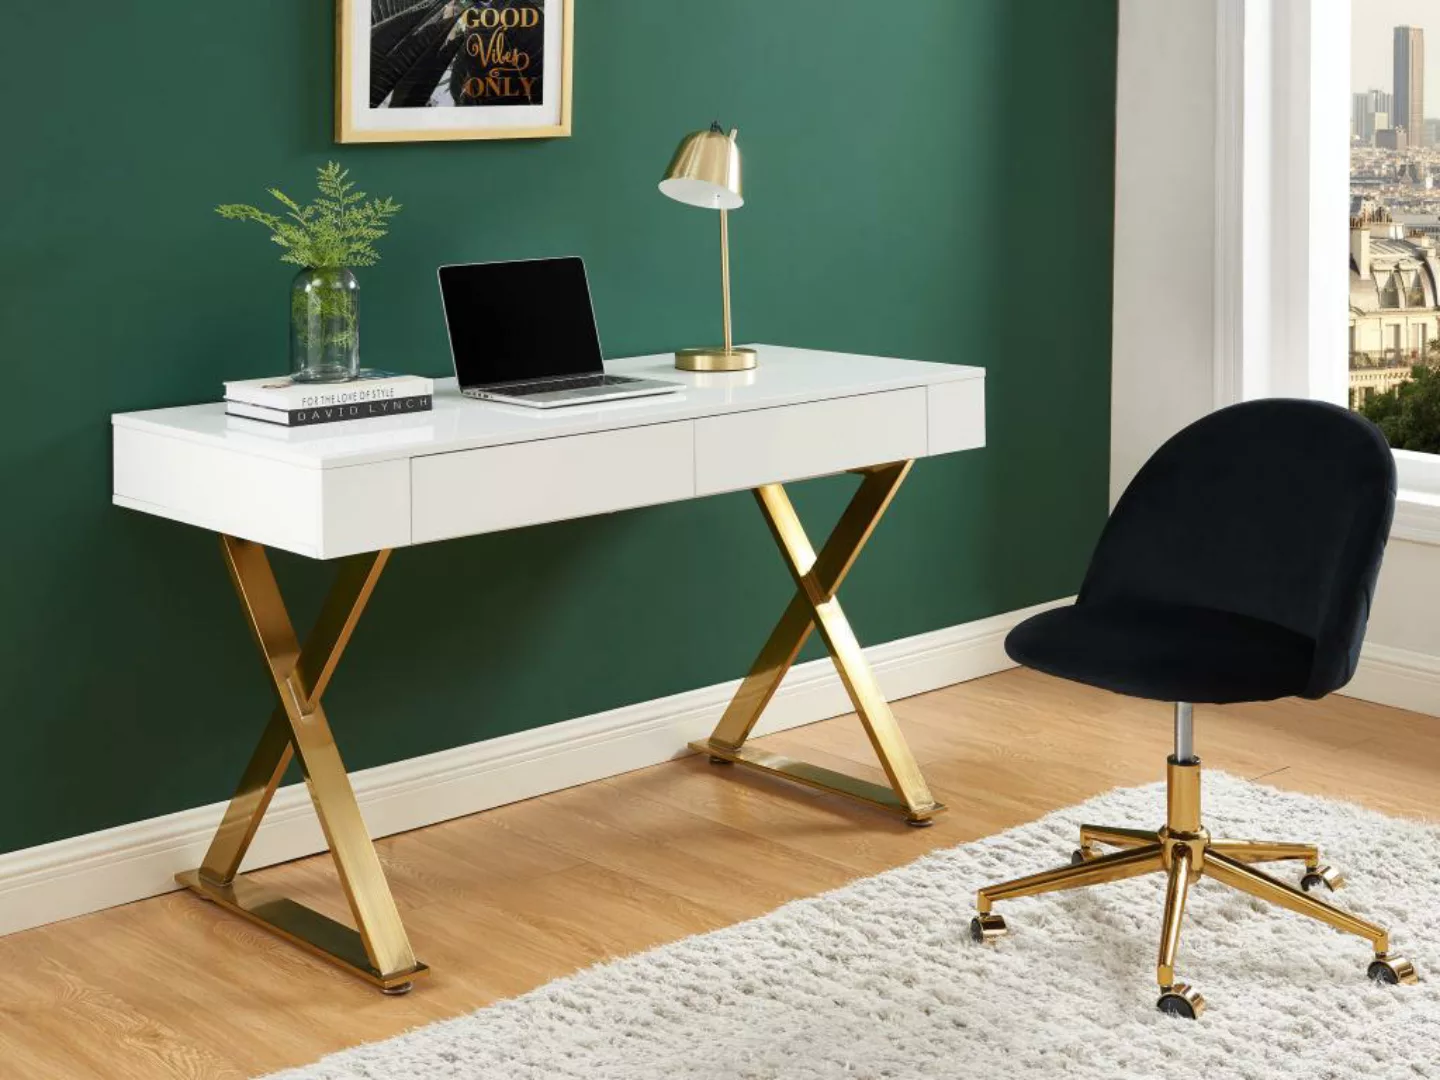 Schreibtisch mit 2 Schubladen - MDF lackiert & Metall - Weiß & Goldfarben - günstig online kaufen